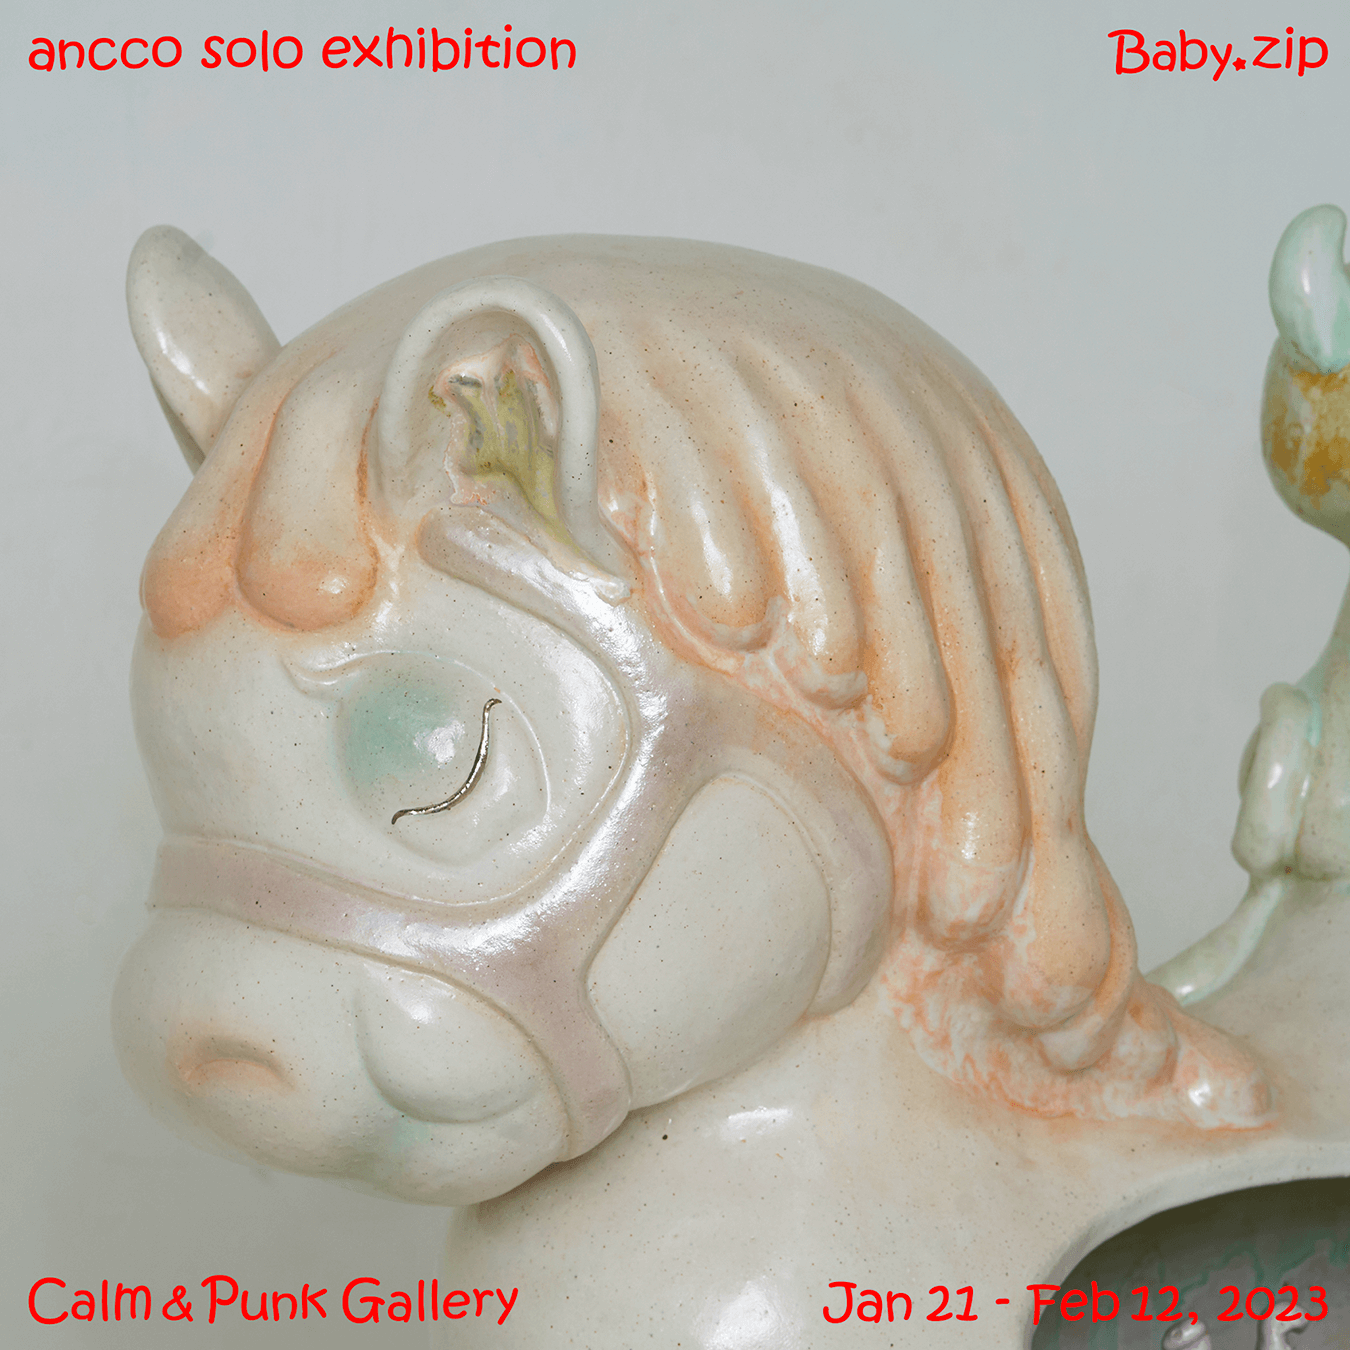 大型陶器作品がCALM & PUNK GALLERYに出没!? anccoの個展が開催中。